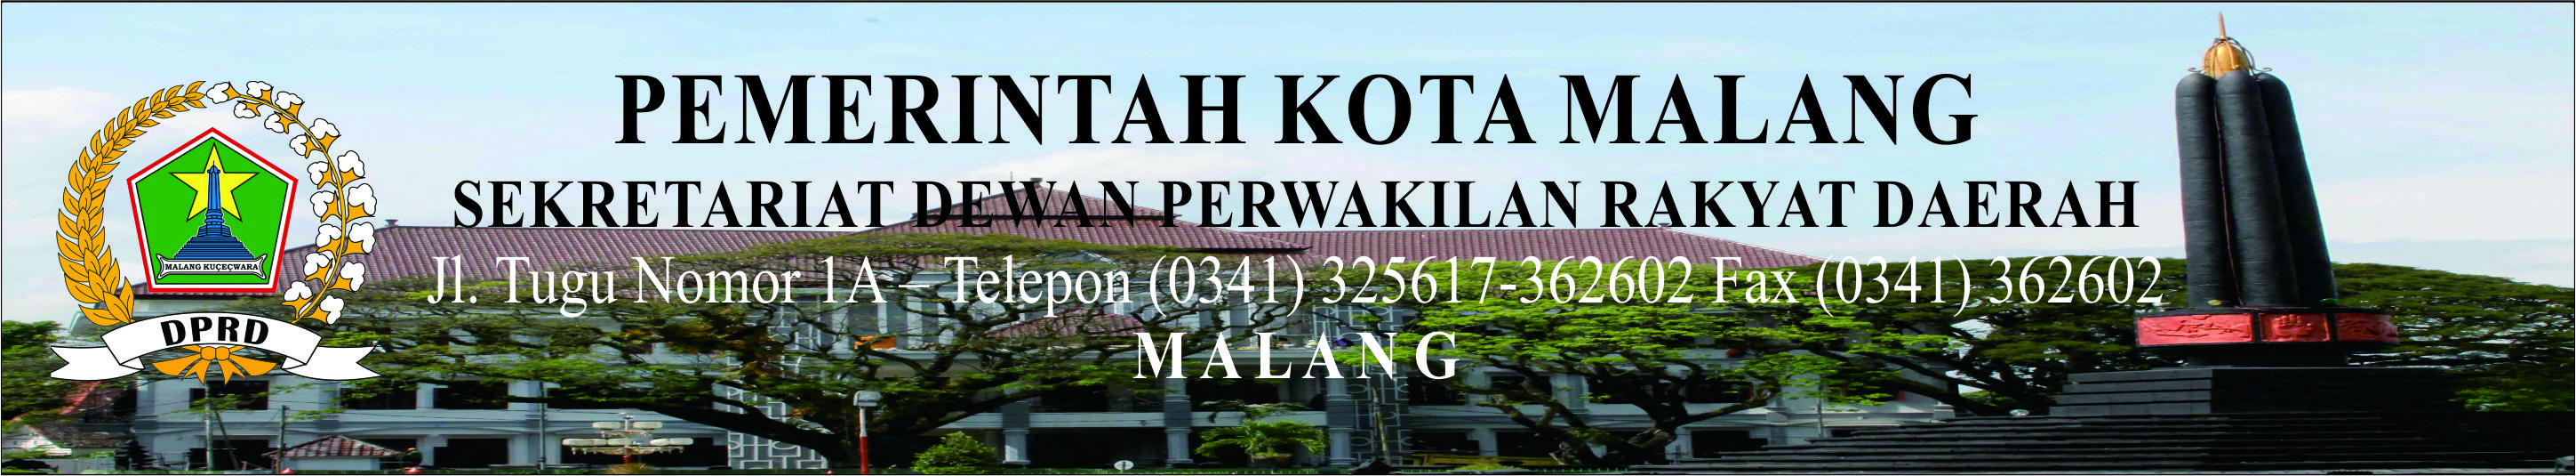 Sekretariat Dewan Perwakilan Rakyat Daerah Kota Malang